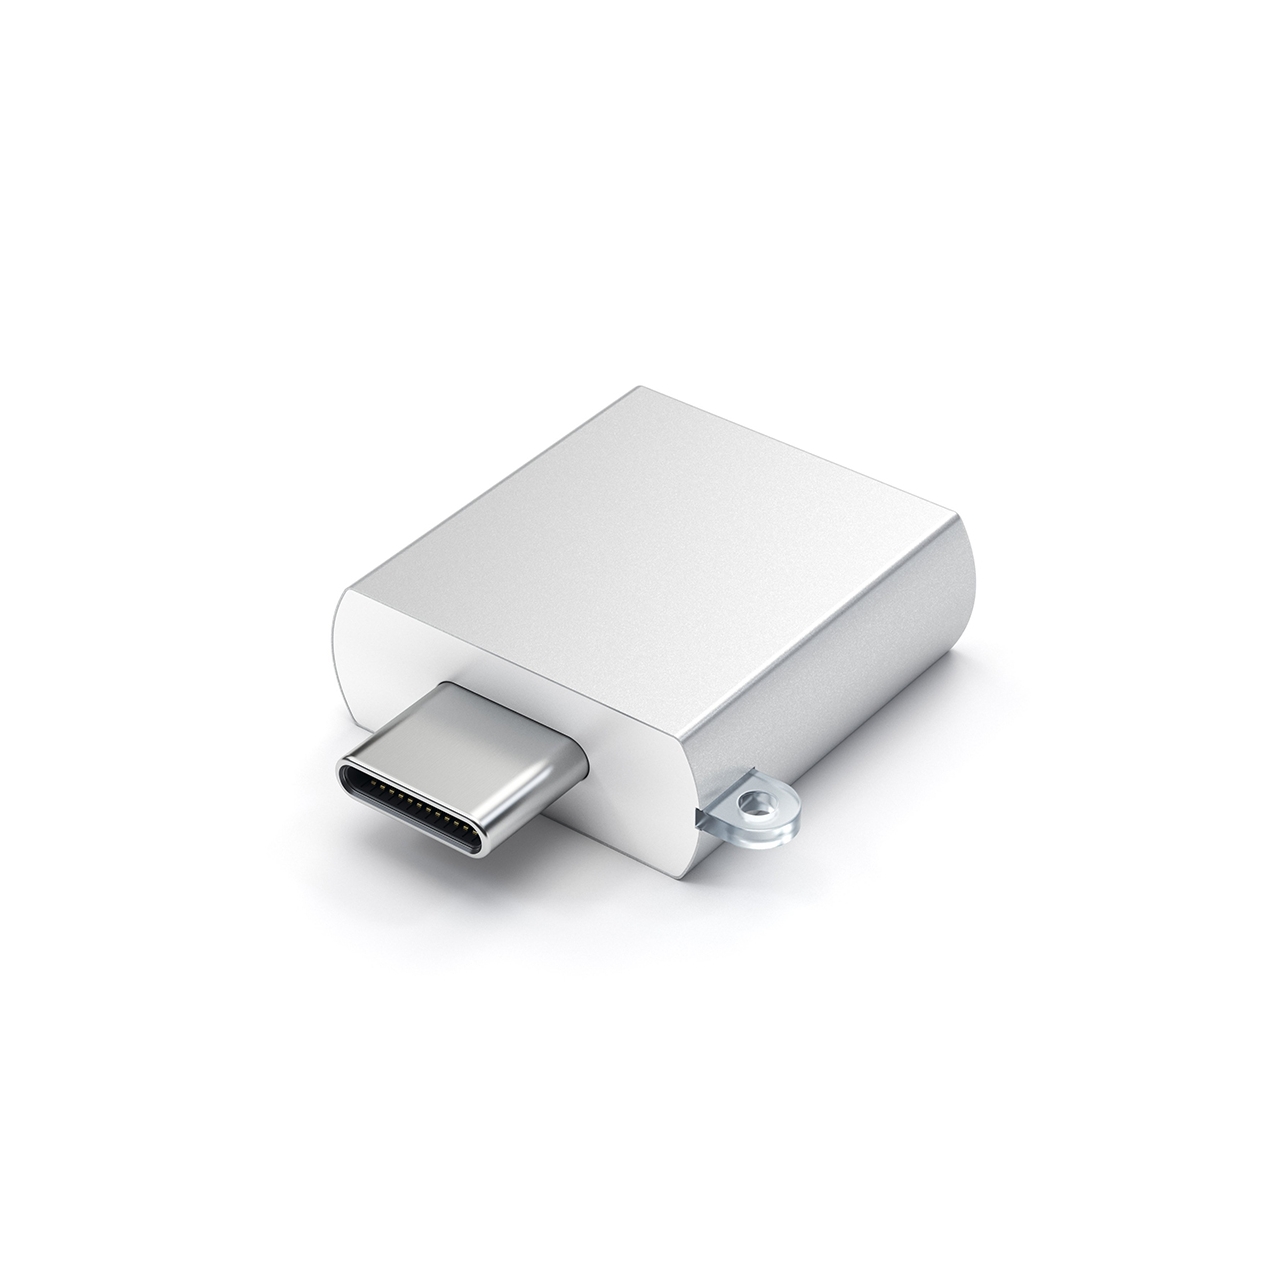 ADATTATORE USB-C A USB SILVER-1